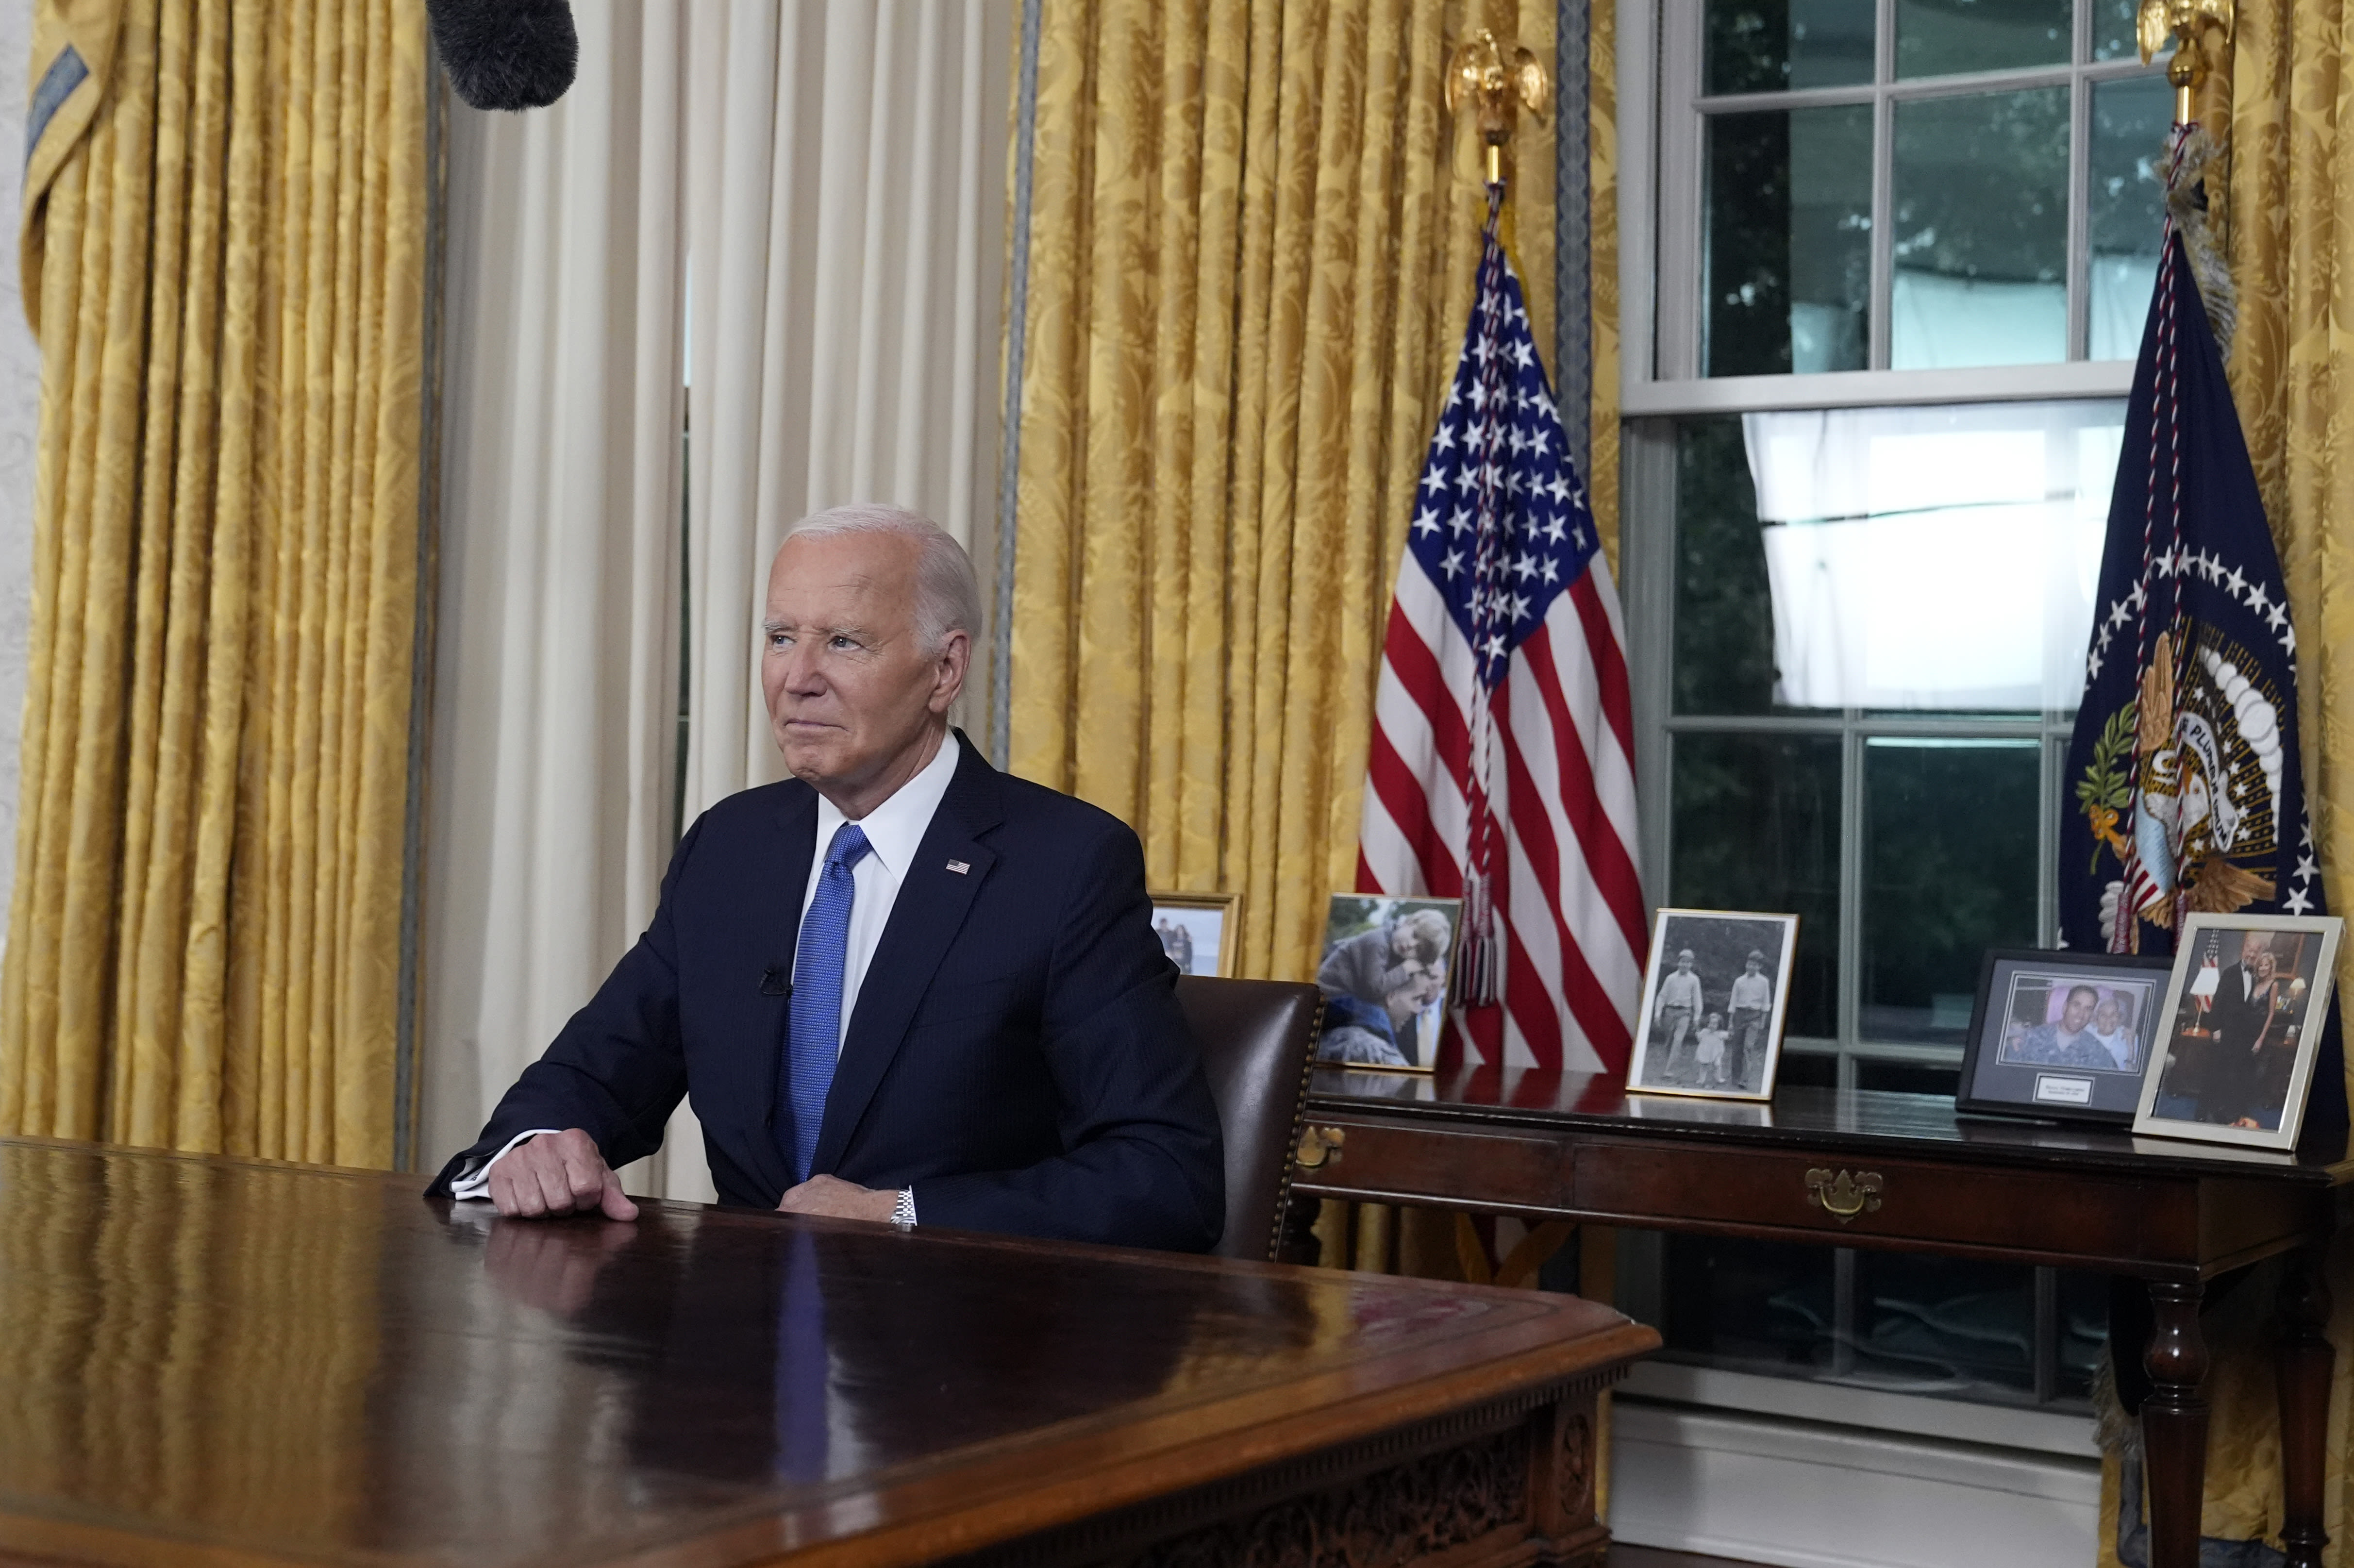 Biden will announce Supreme Court reform plans next week